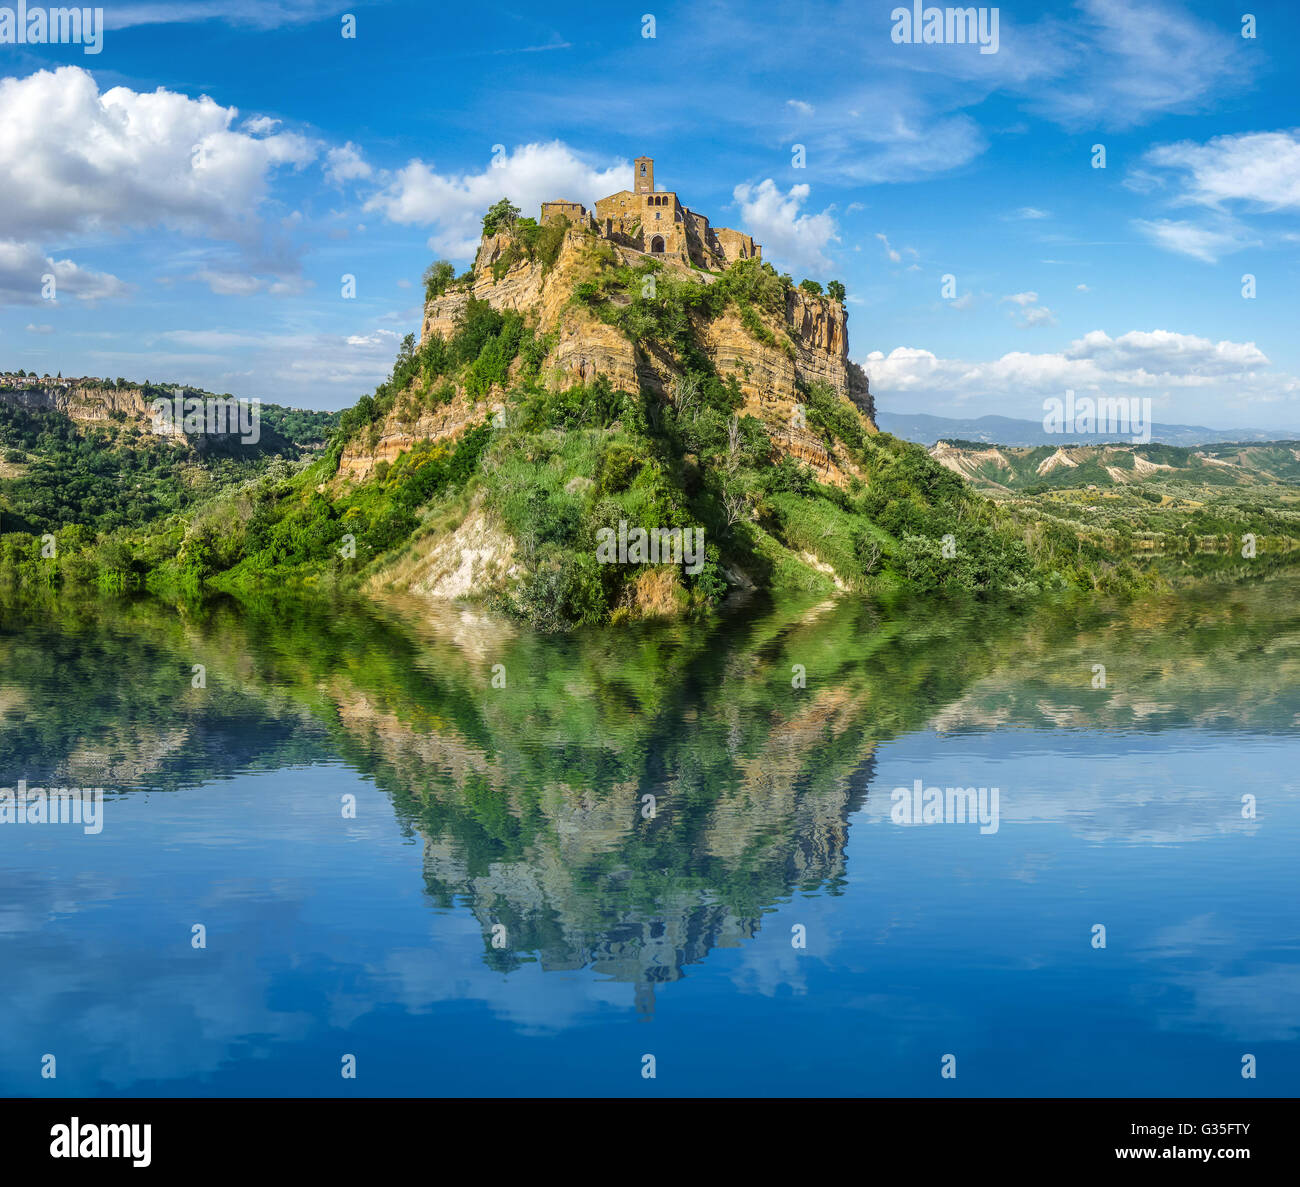 Wunderschönen Panoramablick auf der historischen Burg auf berühmten Felsen reflektieren im kristallklaren See an einem sonnigen Sommertag Stockfoto